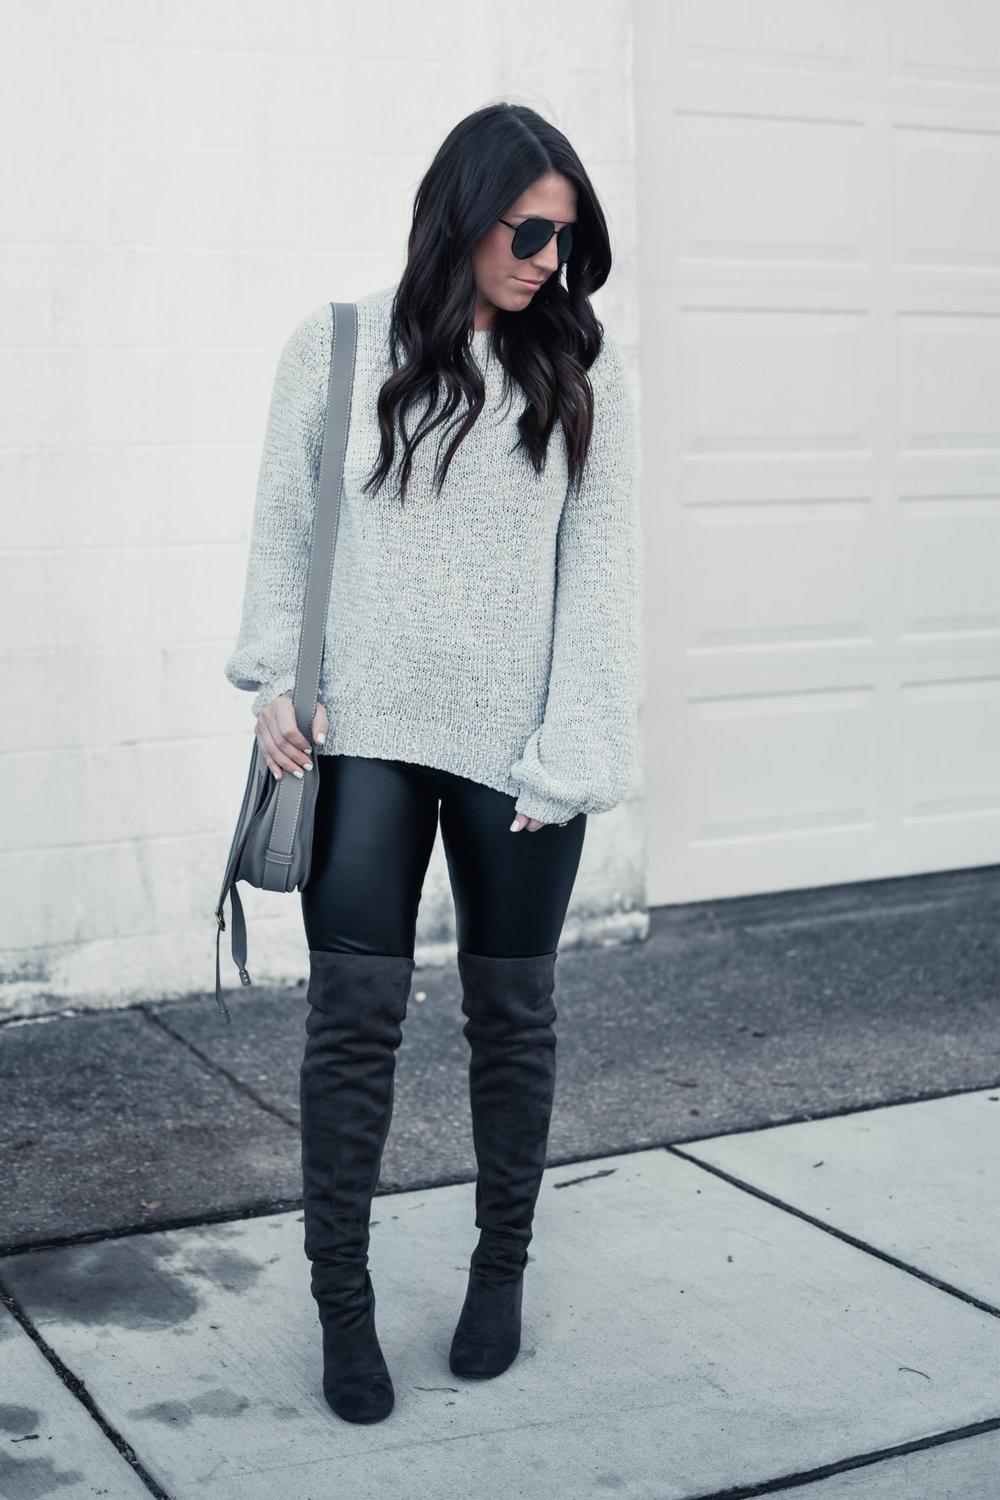 Balloon Sleeve Sweater + Faux Leather Leggings | Pine Barren Beauty